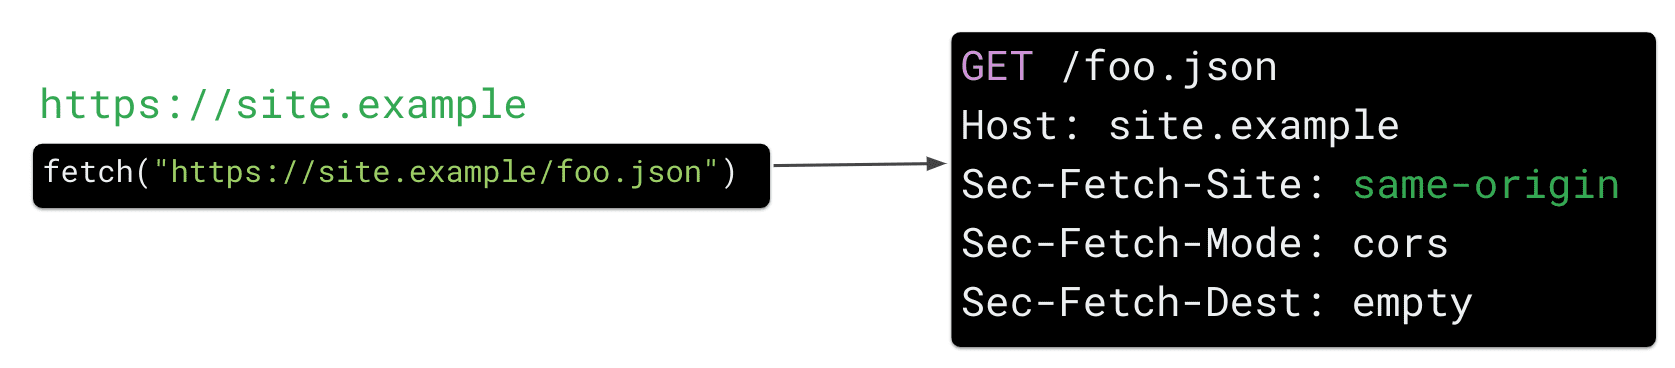 Eine Abrufanfrage von https://site.example für die Ressource https://site.example/foo.json in JavaScript führt dazu, dass der Browser den HTTP-Anfrageheader „Sec Fetch-Site: same-origin“ sendet.